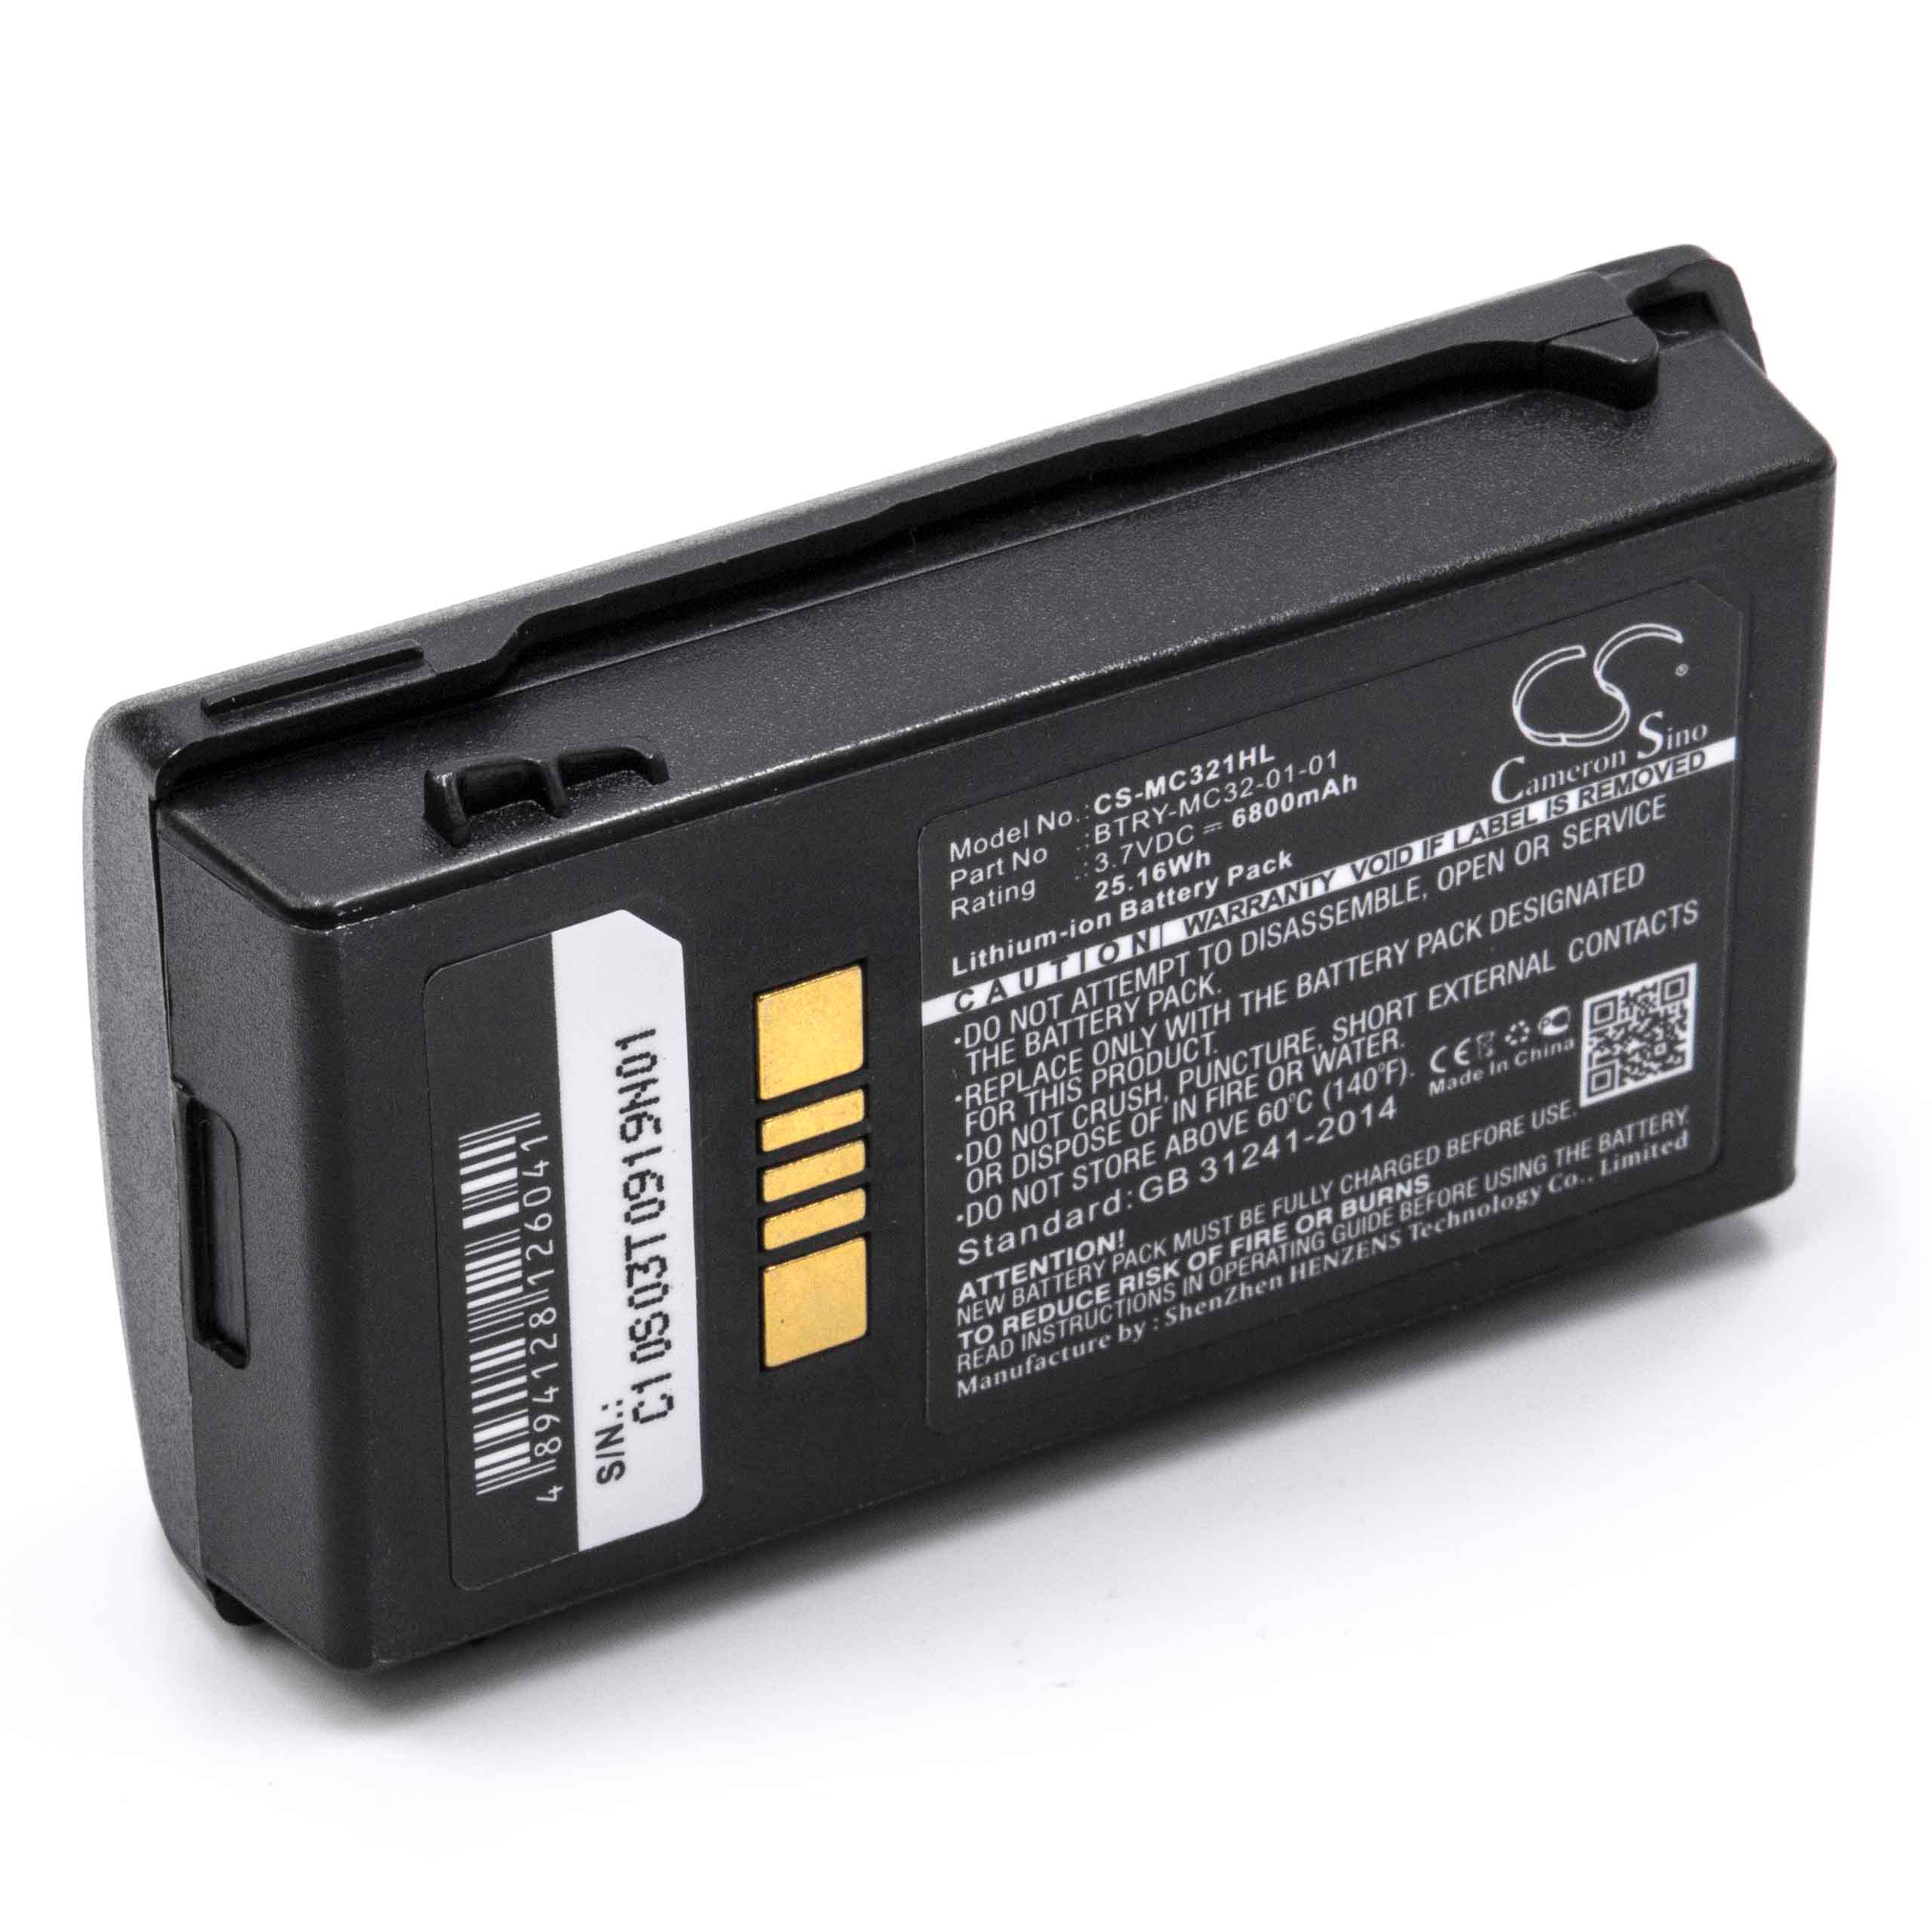 Batterie remplace Motorola BTRY-MC32-01-01 pour scanner de code-barre - 6800mAh 3,7V Li-ion